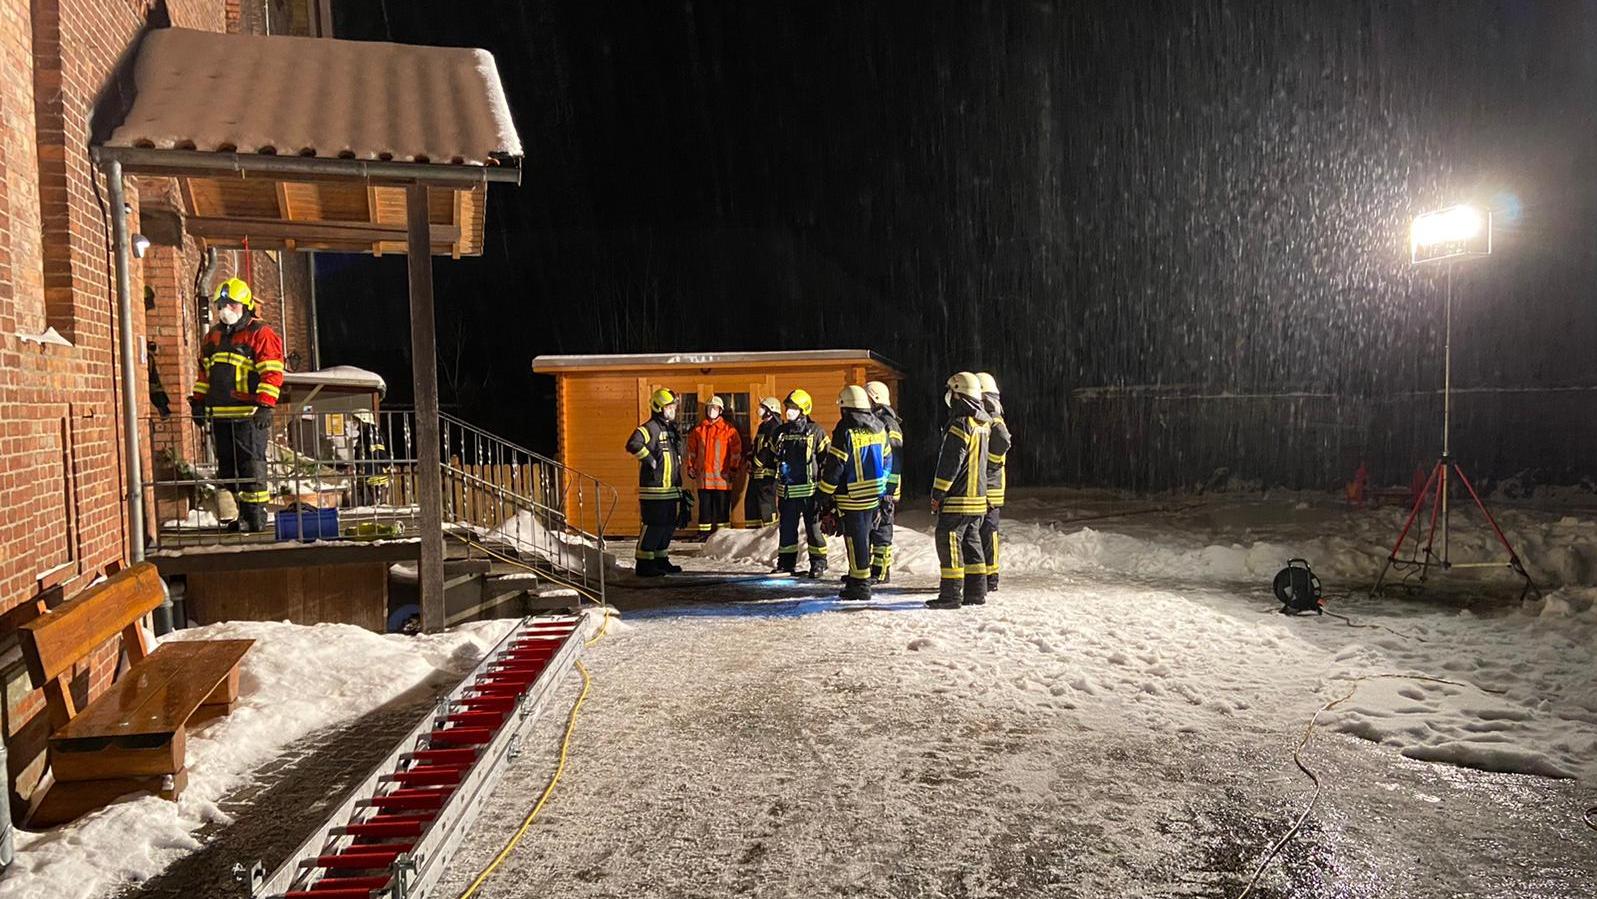 Fotos (Gemeindefeuerwehr Lehre): Es gab einen Wasserschaden in der Brunsroder Kita, die Feuerwehr war im Einsatz.